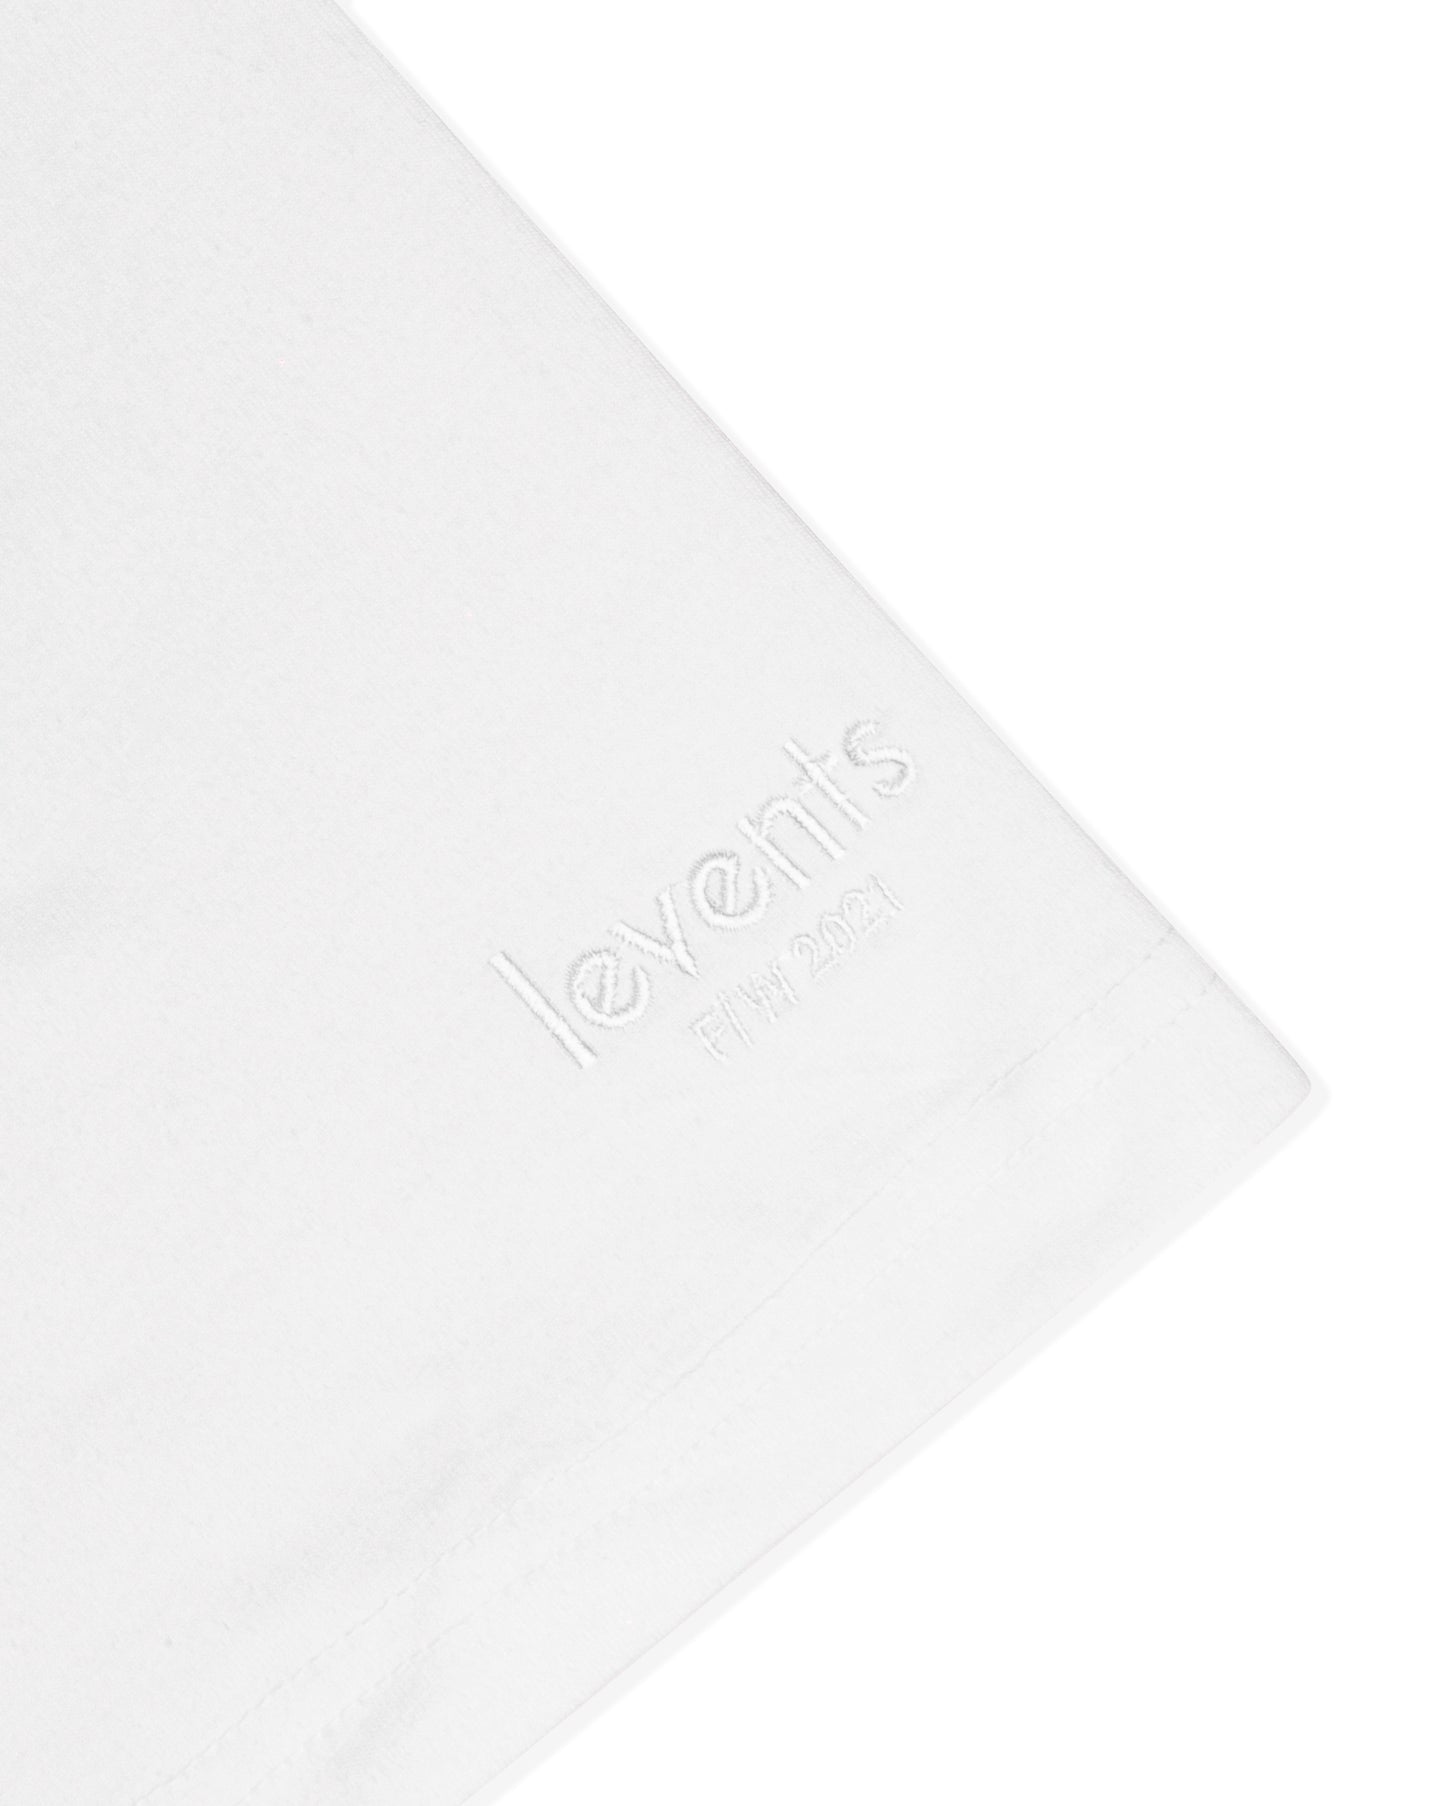 Levents® Mini Popular Logo/ White